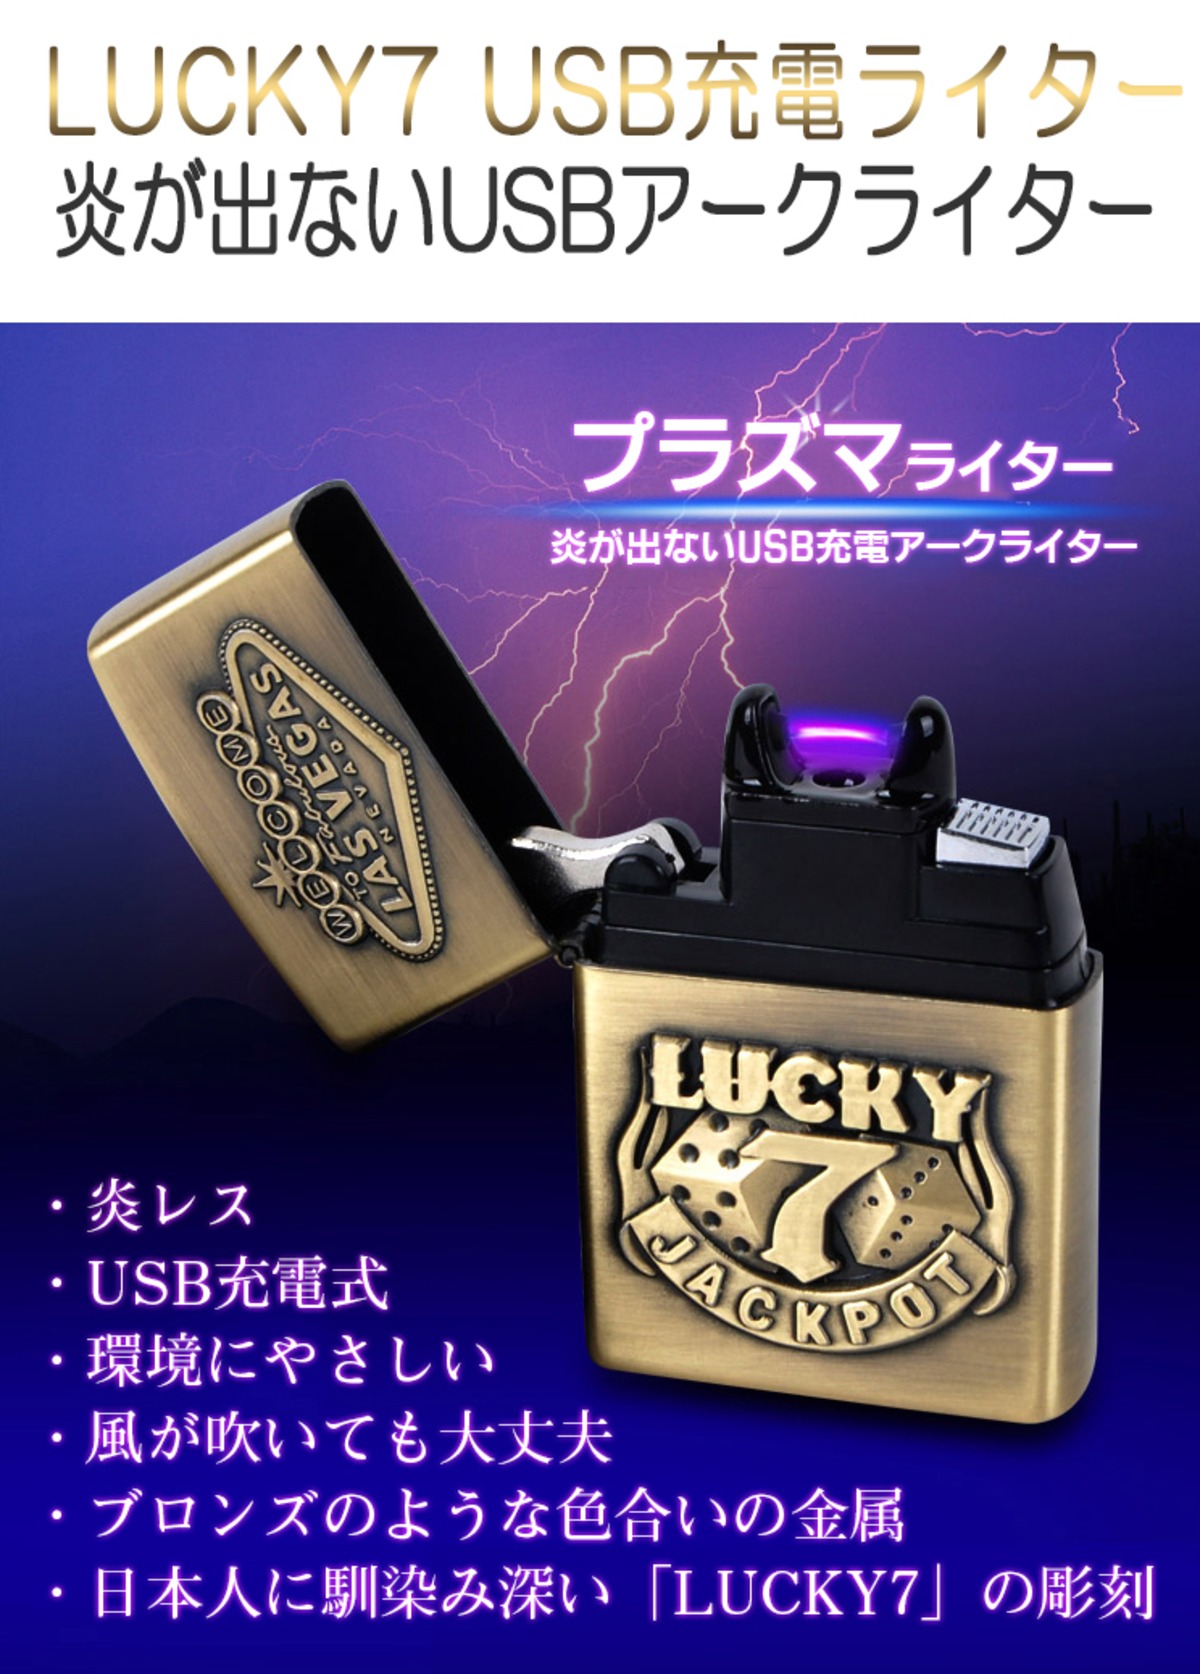 プラズマライター 電子ライター 金色 USB 充電式 高級 ライター メタル製